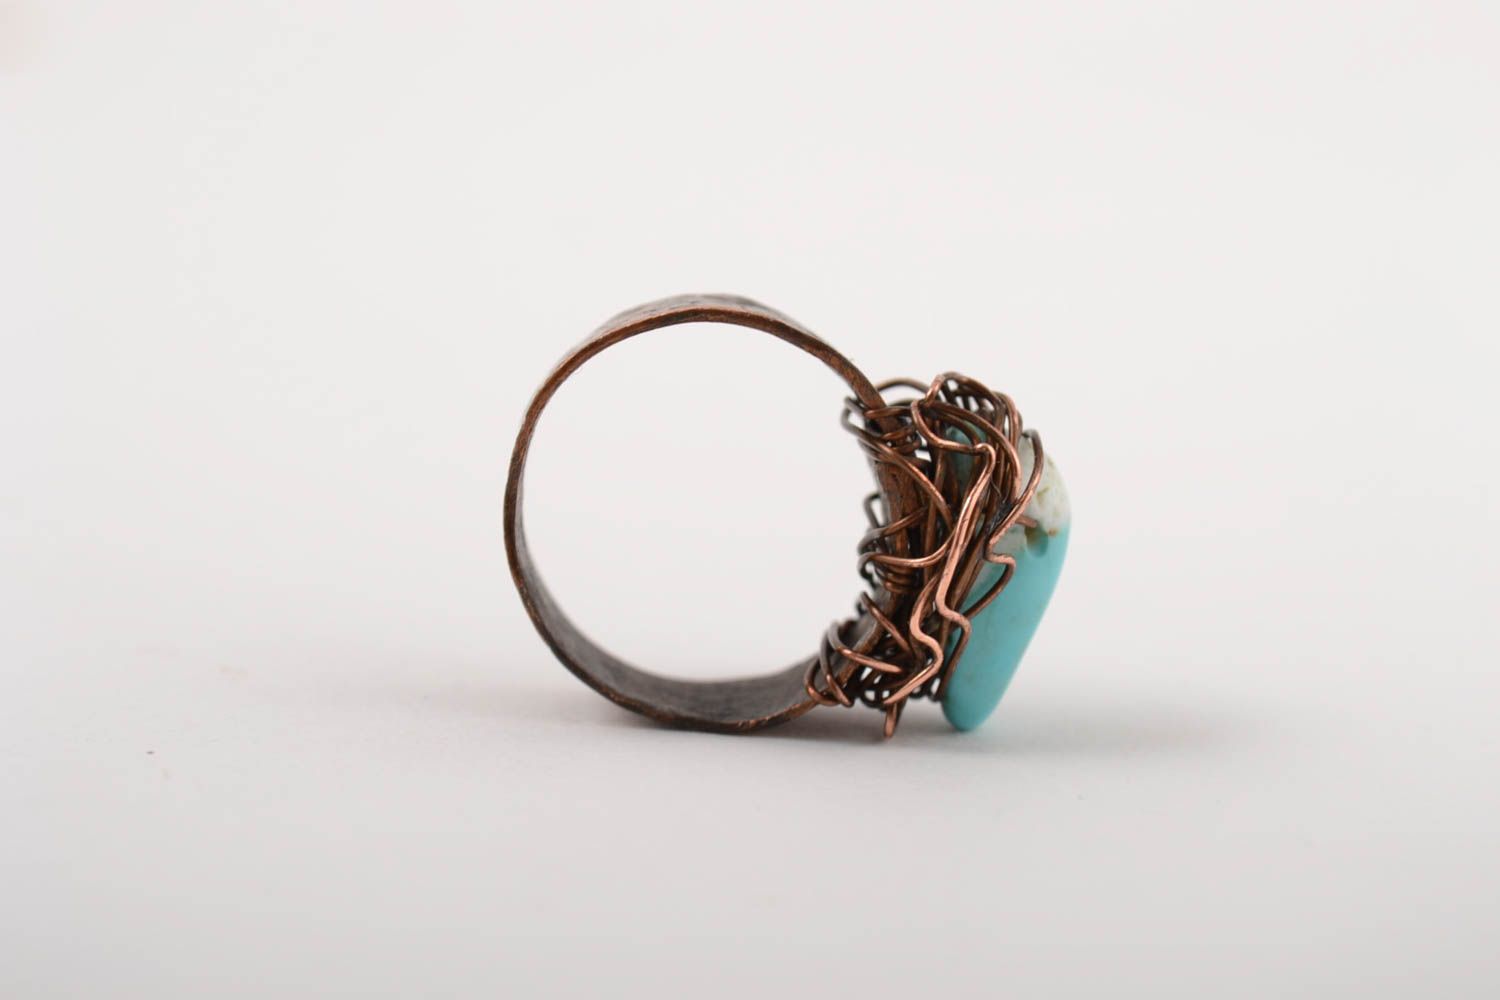 Красивое кольцо хэнд мэйд украшение в технике wire wrap медное кольцо с бирюзой фото 5